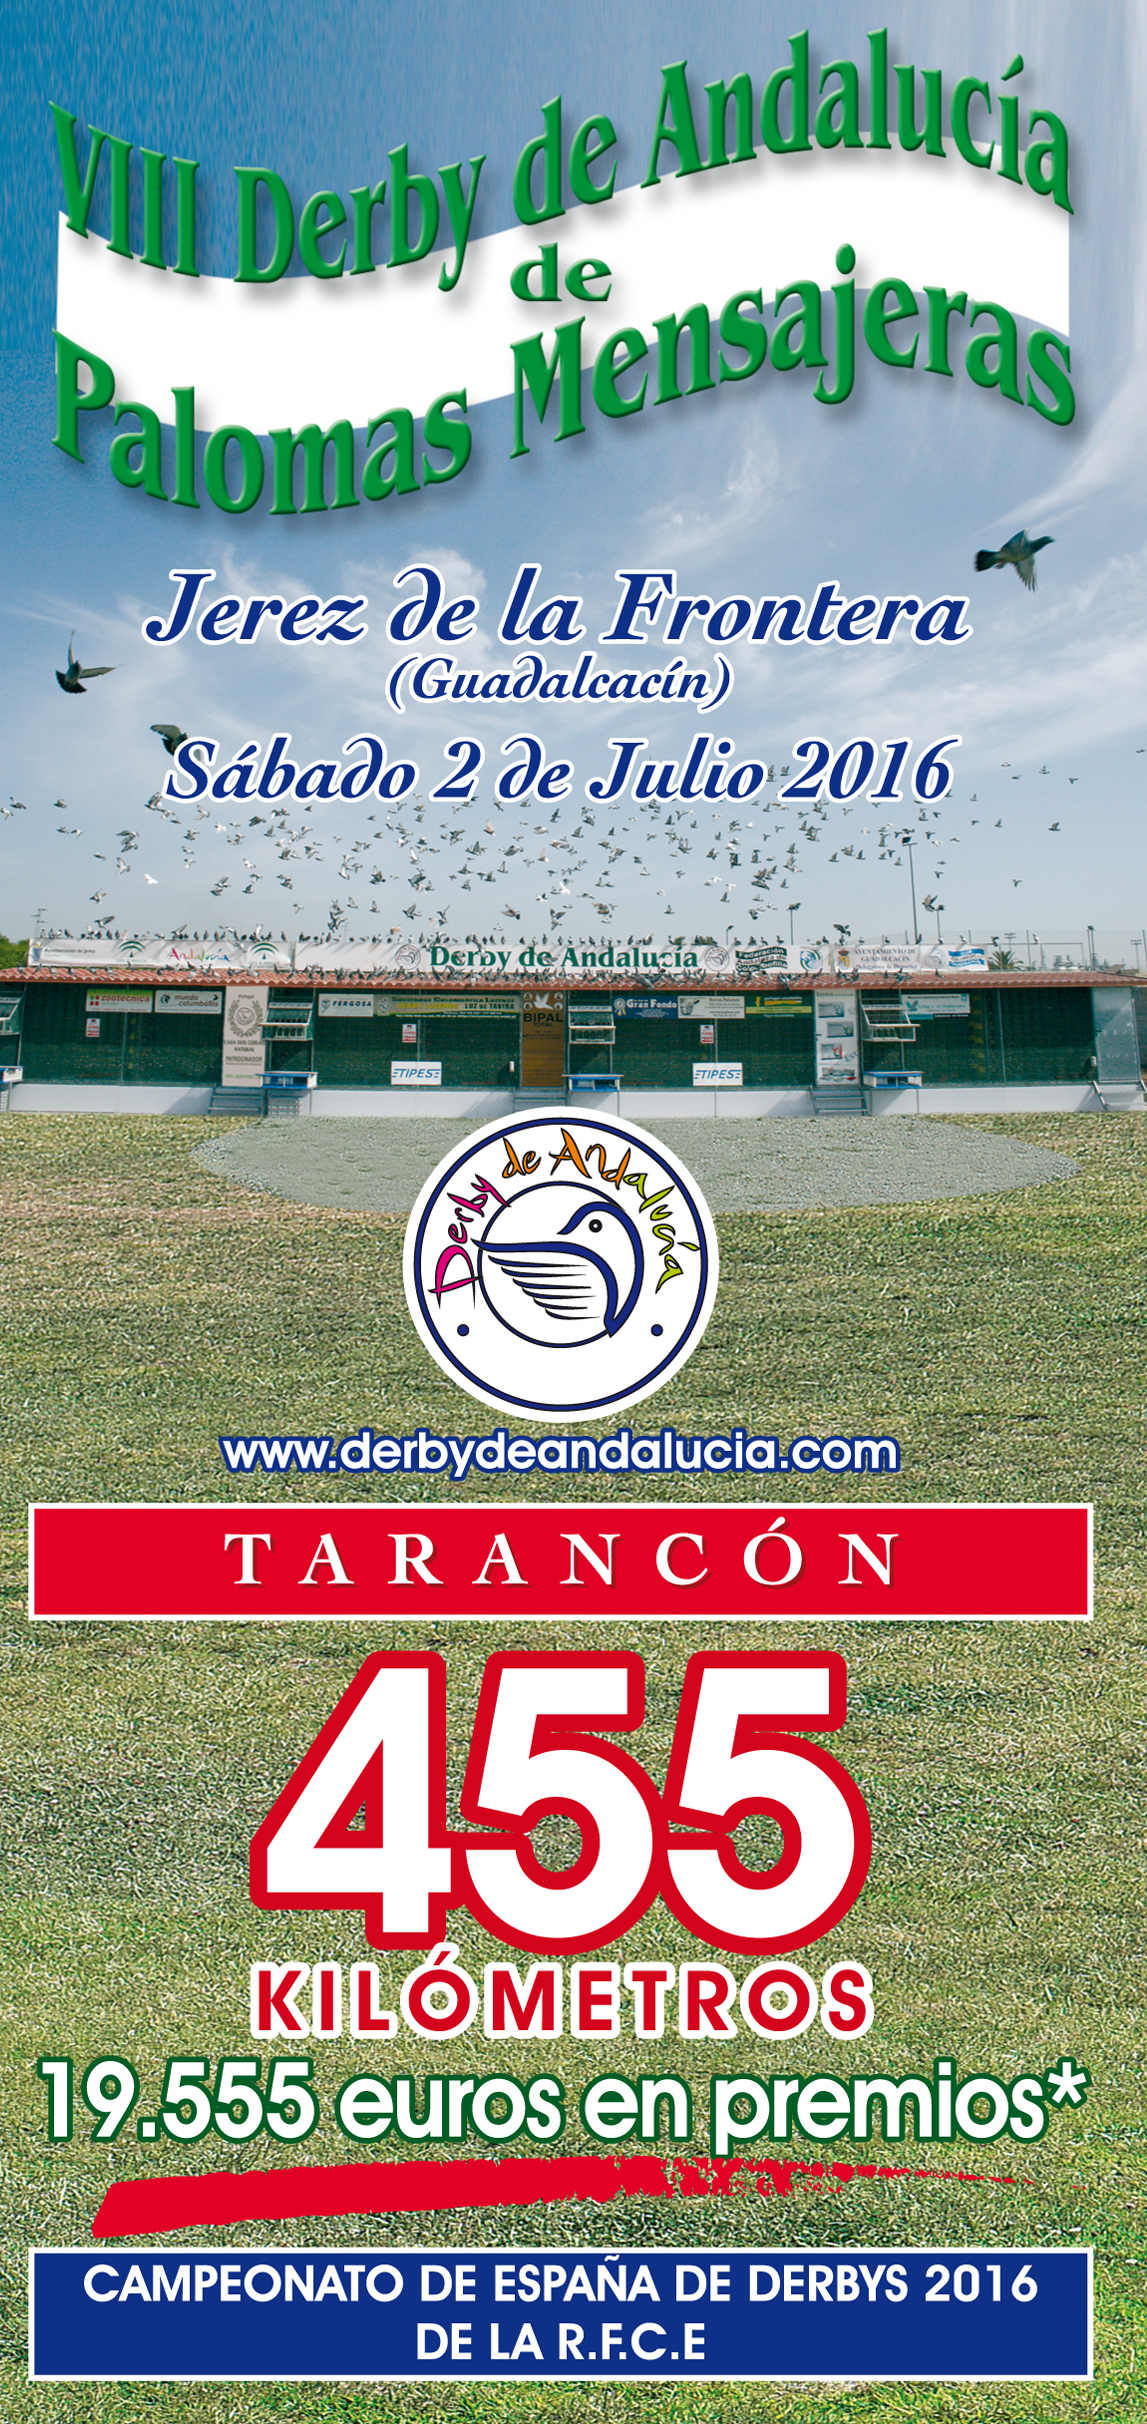 Derby de Andalucía de palomas mensajeras 2016